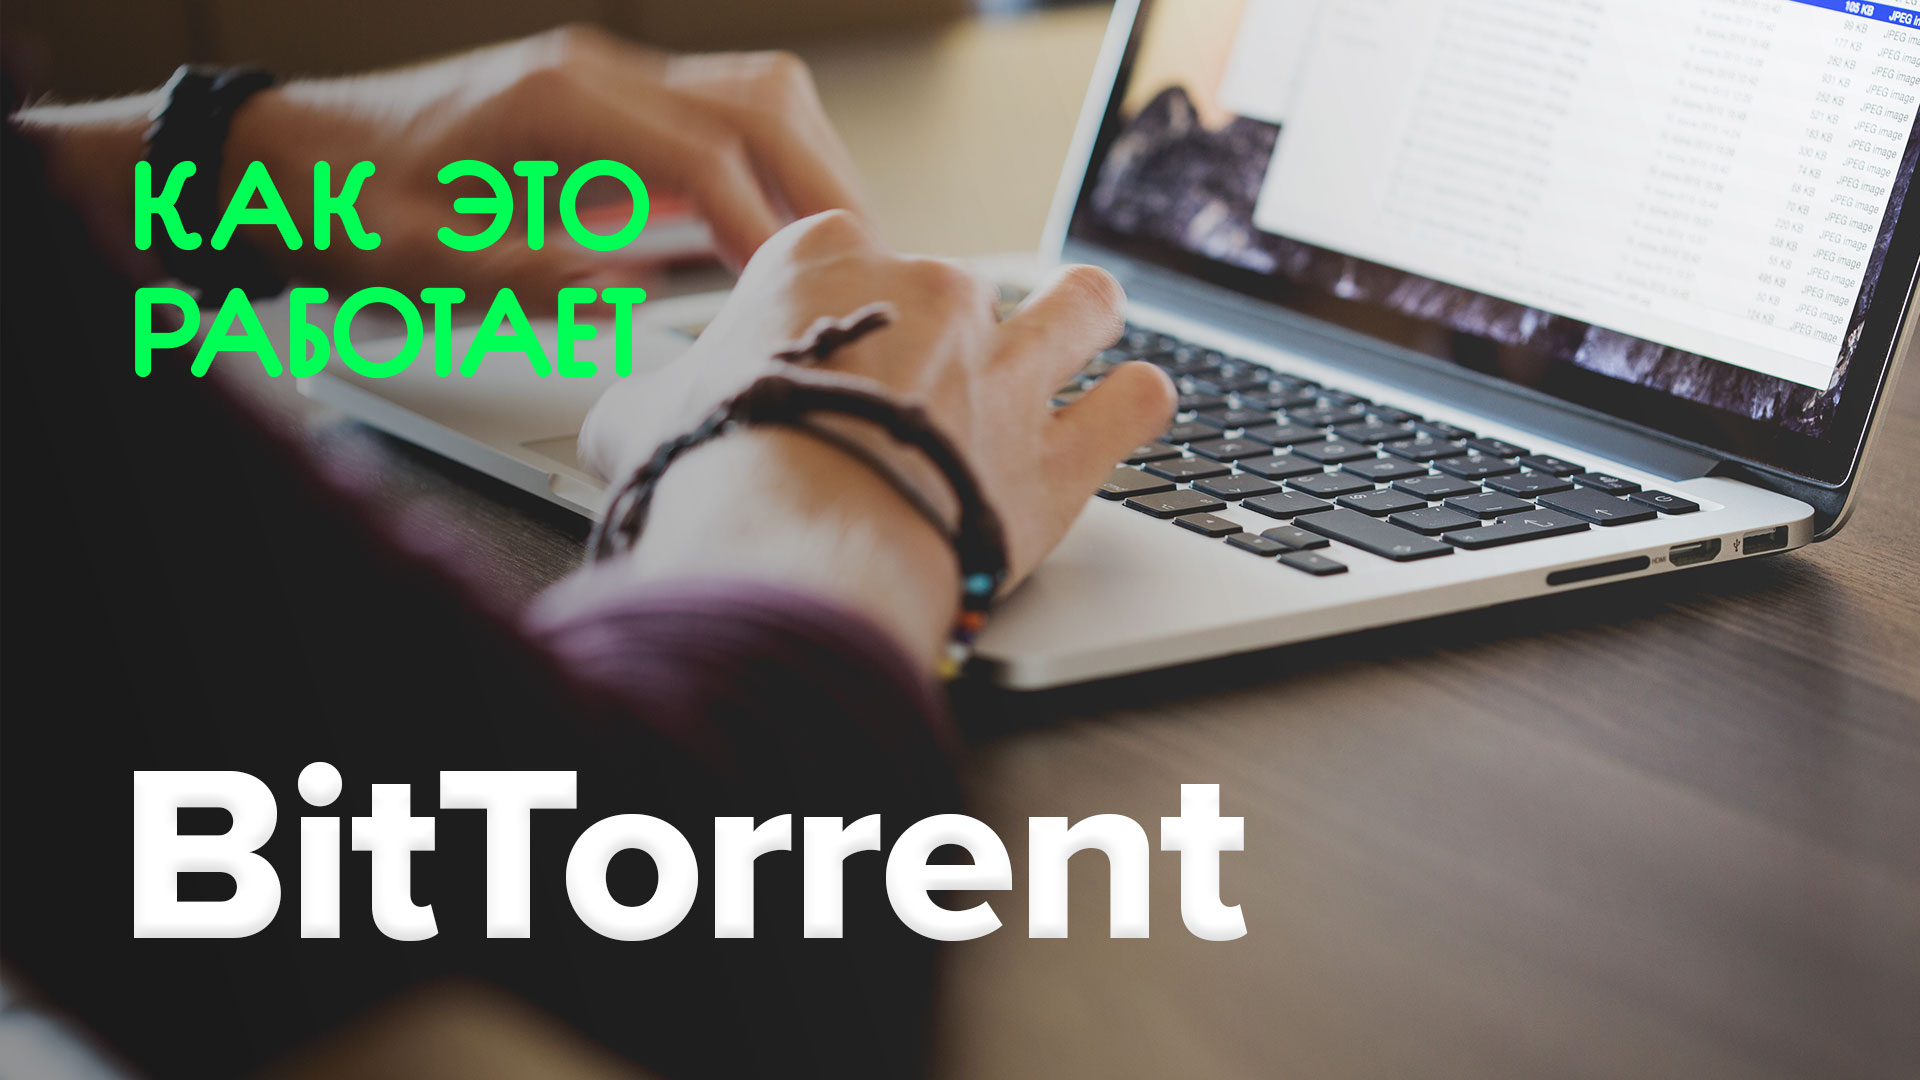 Wie funktioniert das? | BitTorrent